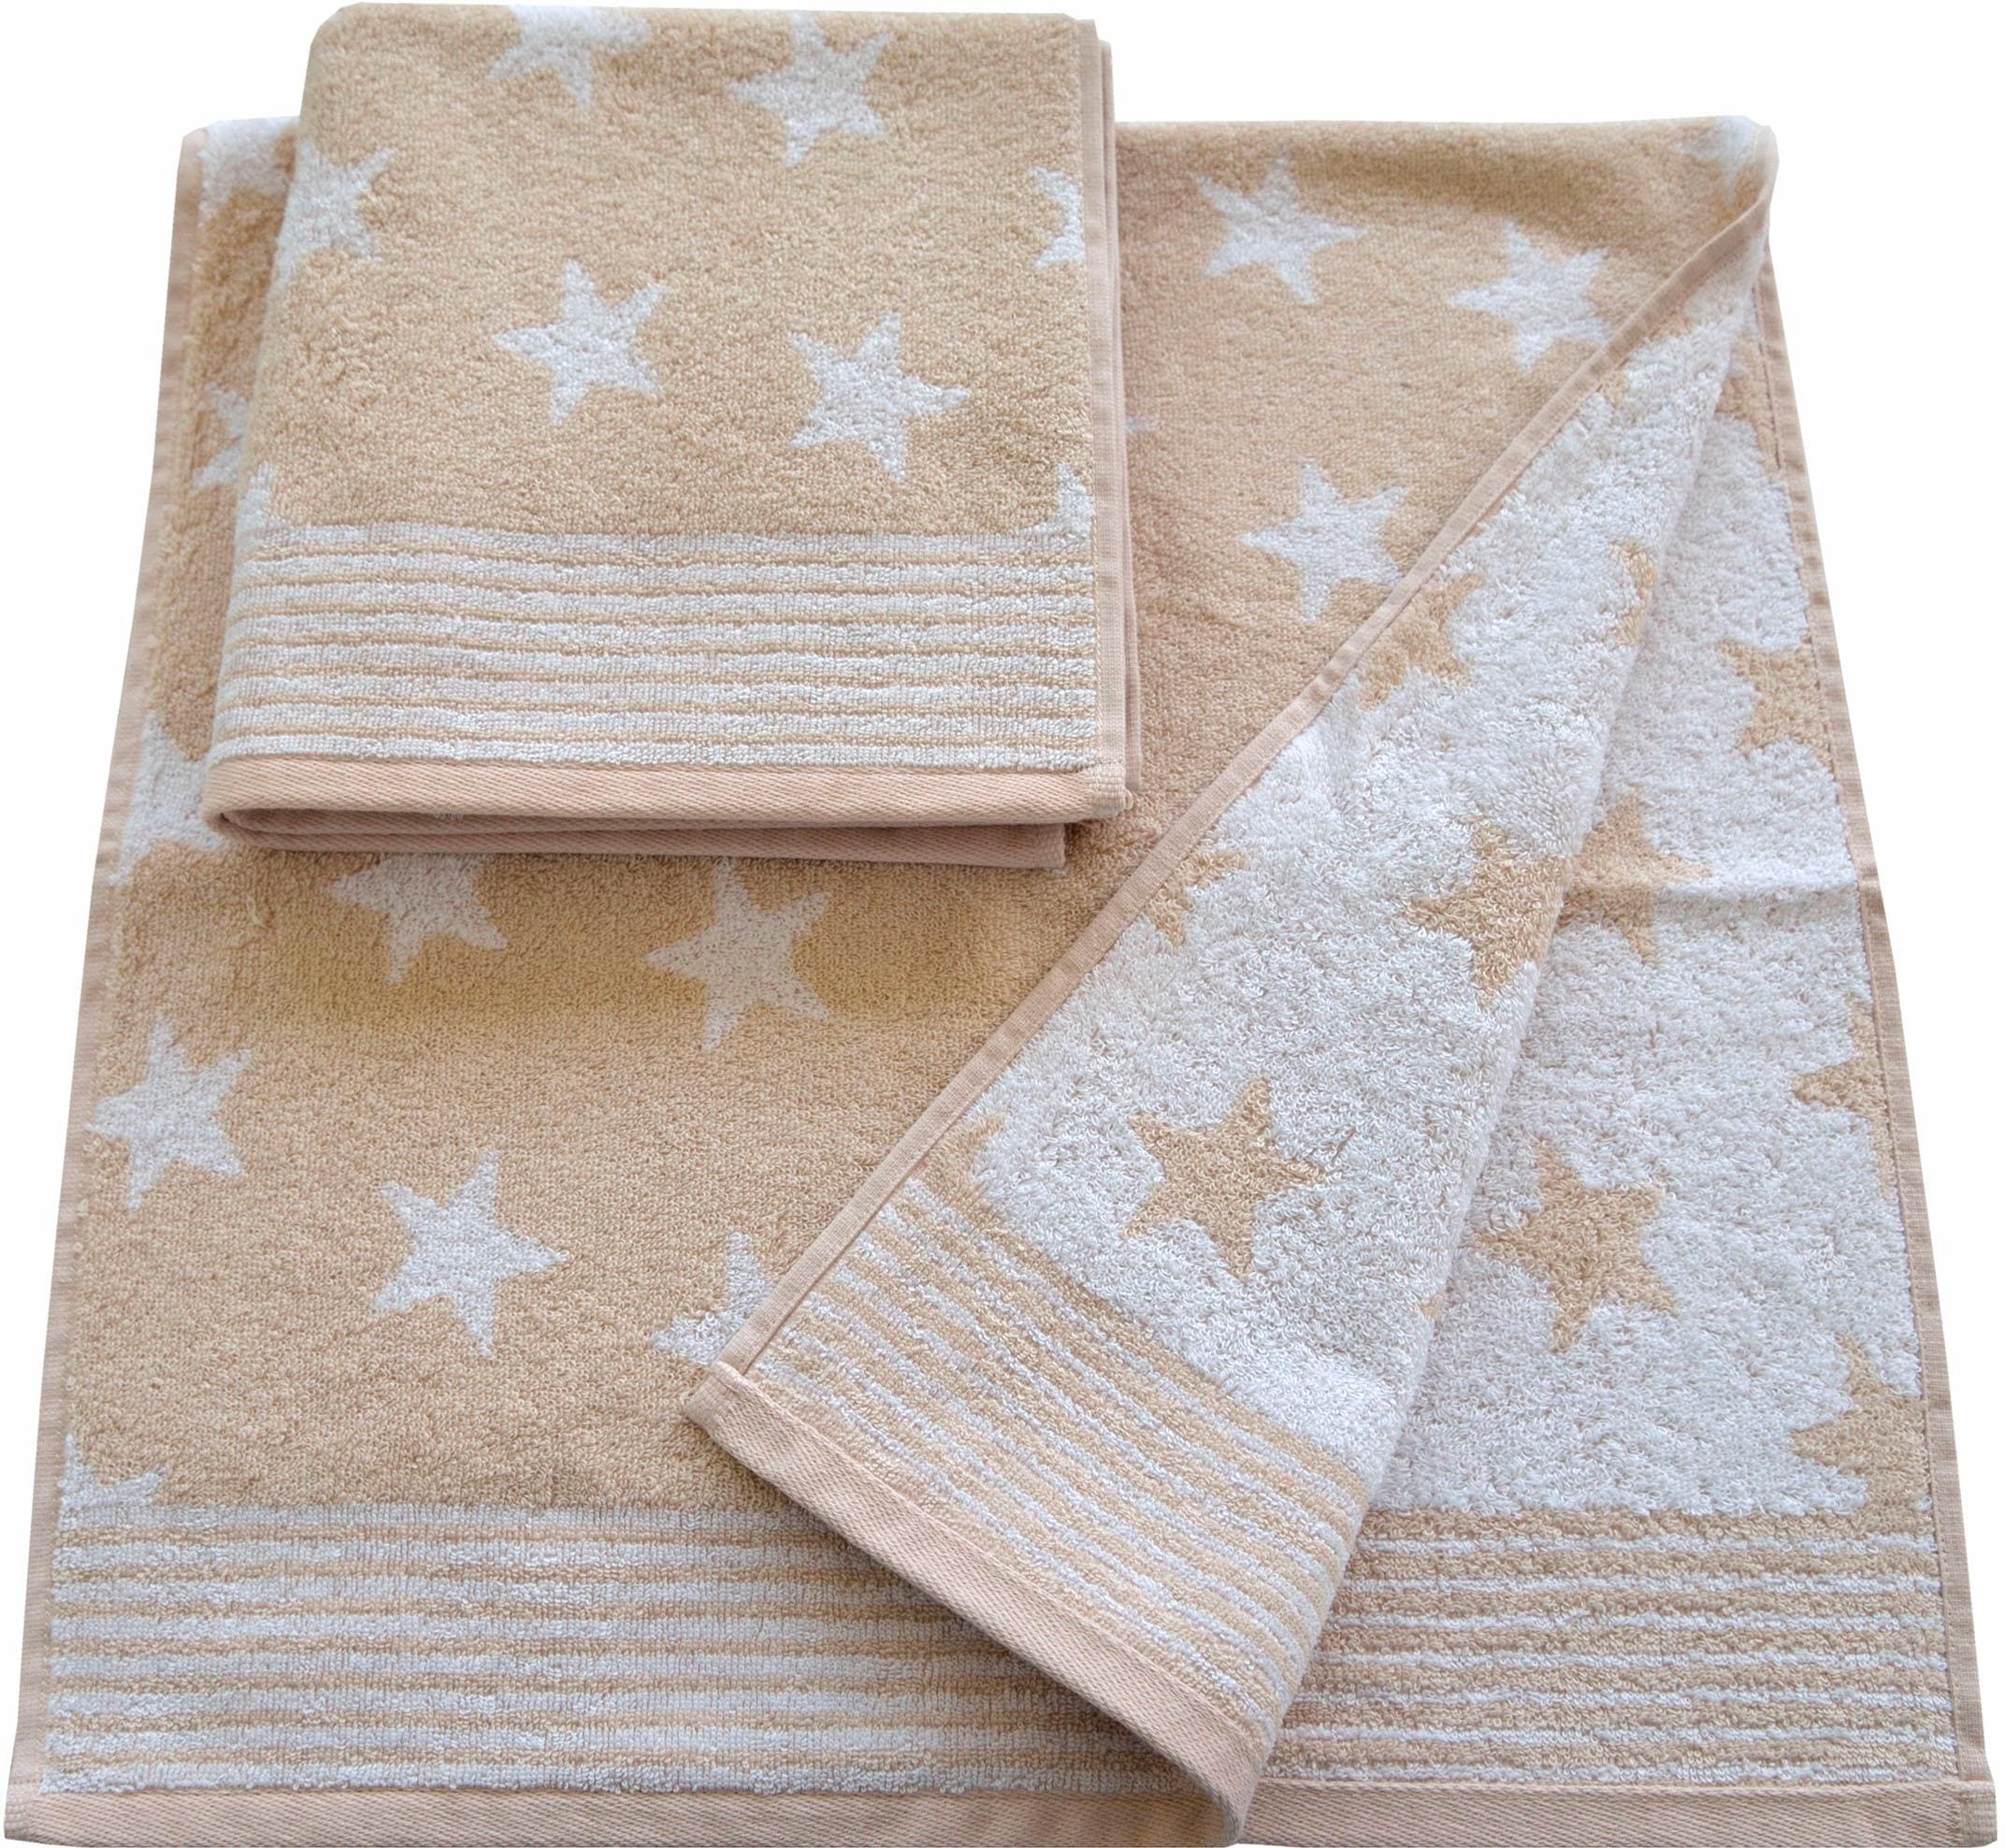 Dyckhoff Handtücher »Stars«, (2 St.), mit Sternen und Bordüre